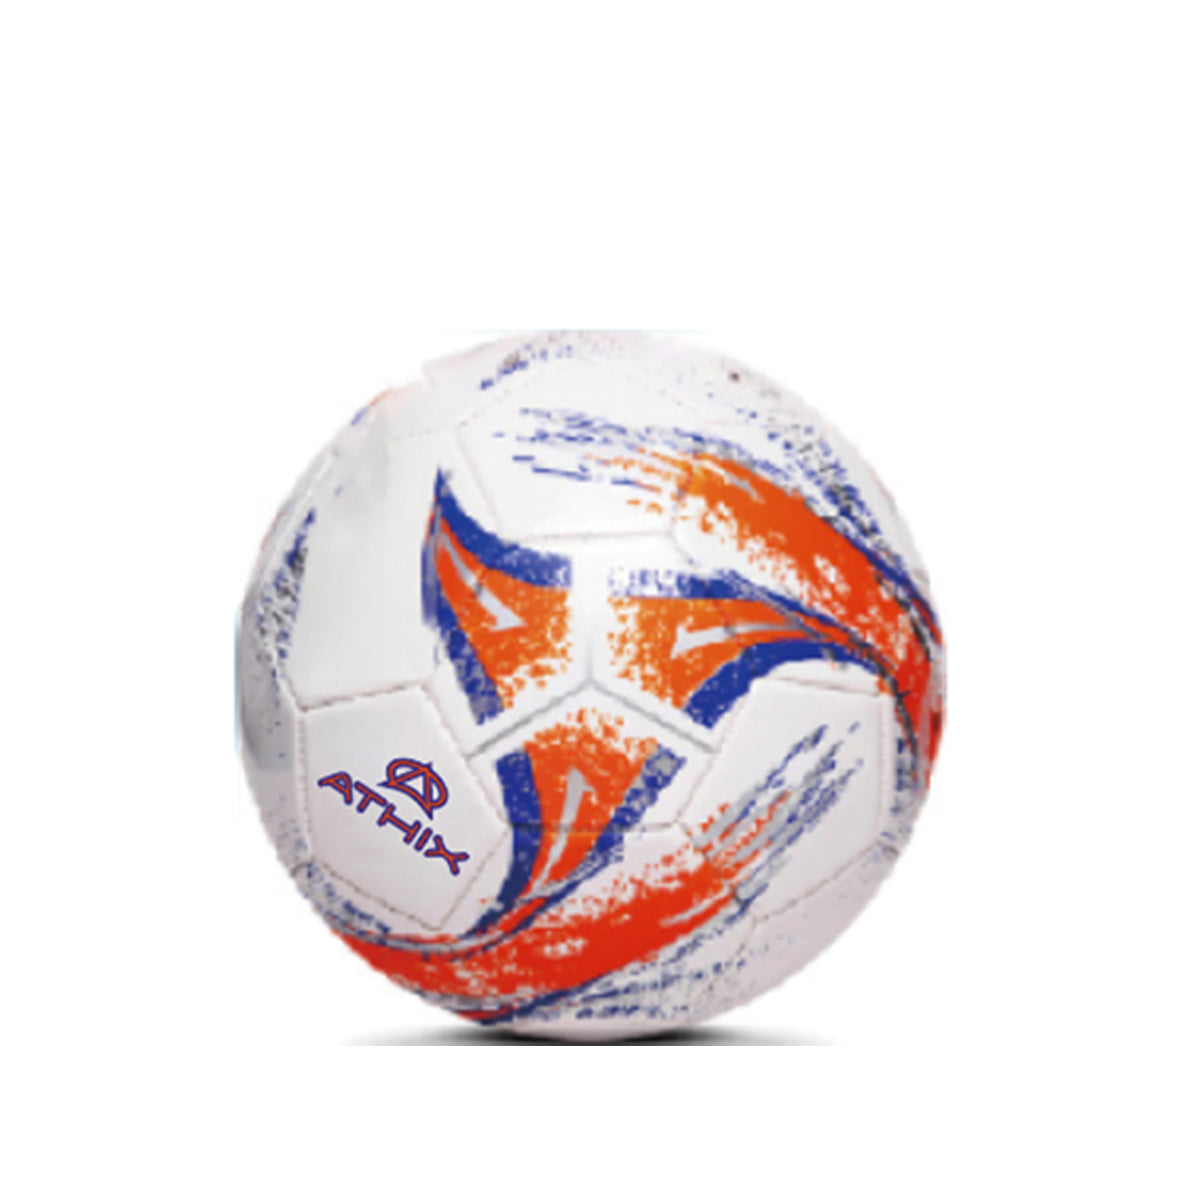 knif-soccer-ball#blanco/naranja/azul